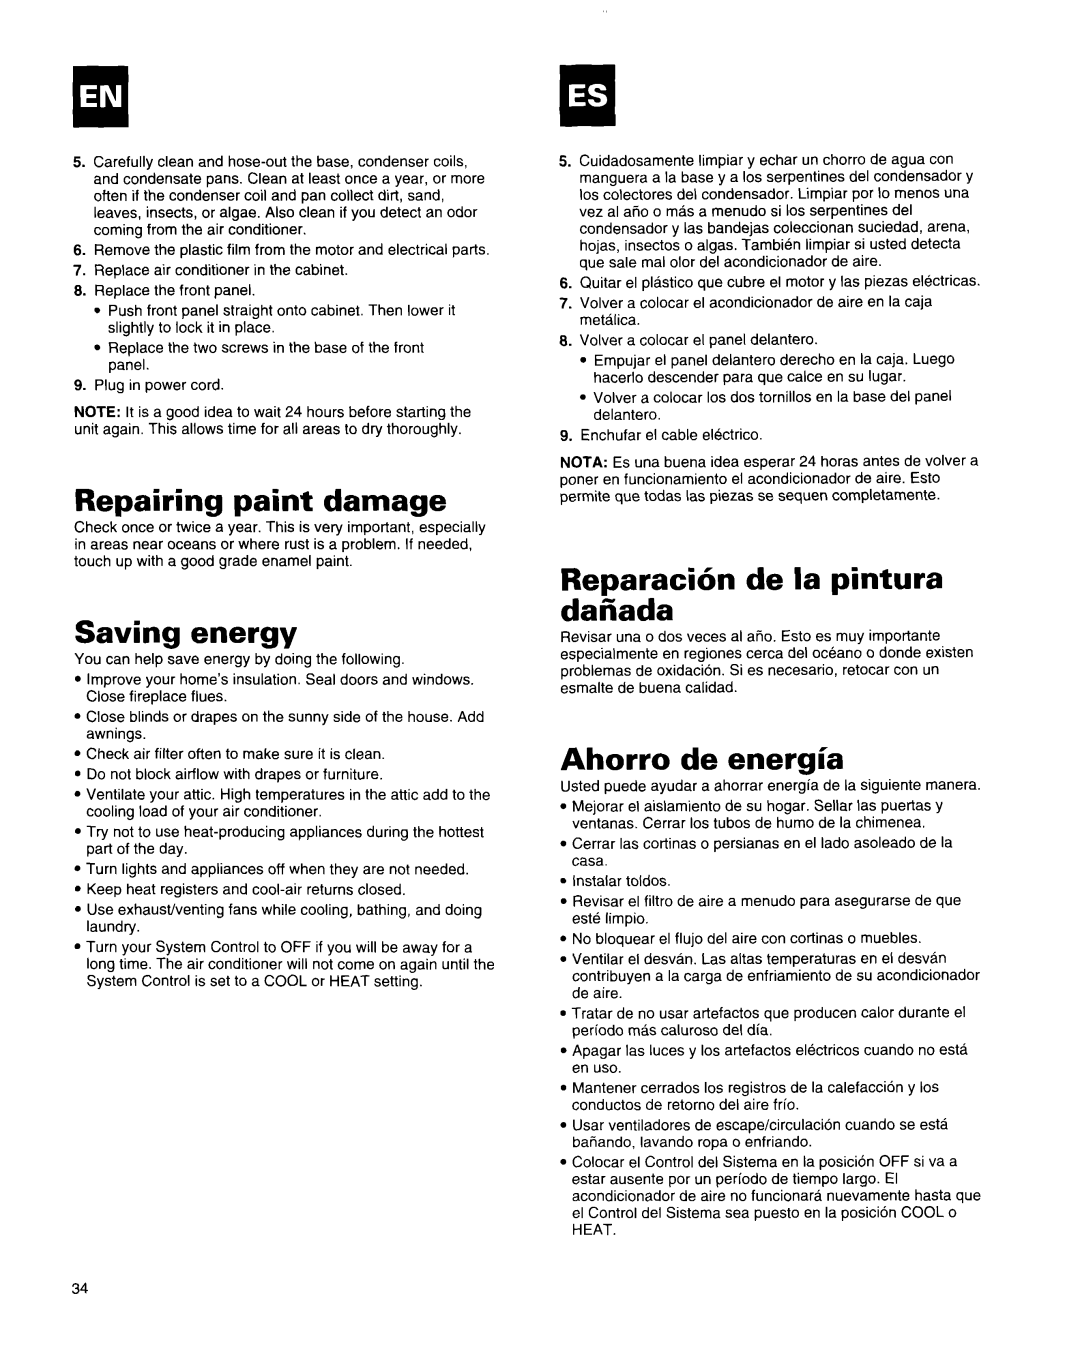 Whirlpool X18004D00 manual Repairing paint damage, Saving energy, Reparaci6n de la pintura dafiada, Ahorro de energl’a 